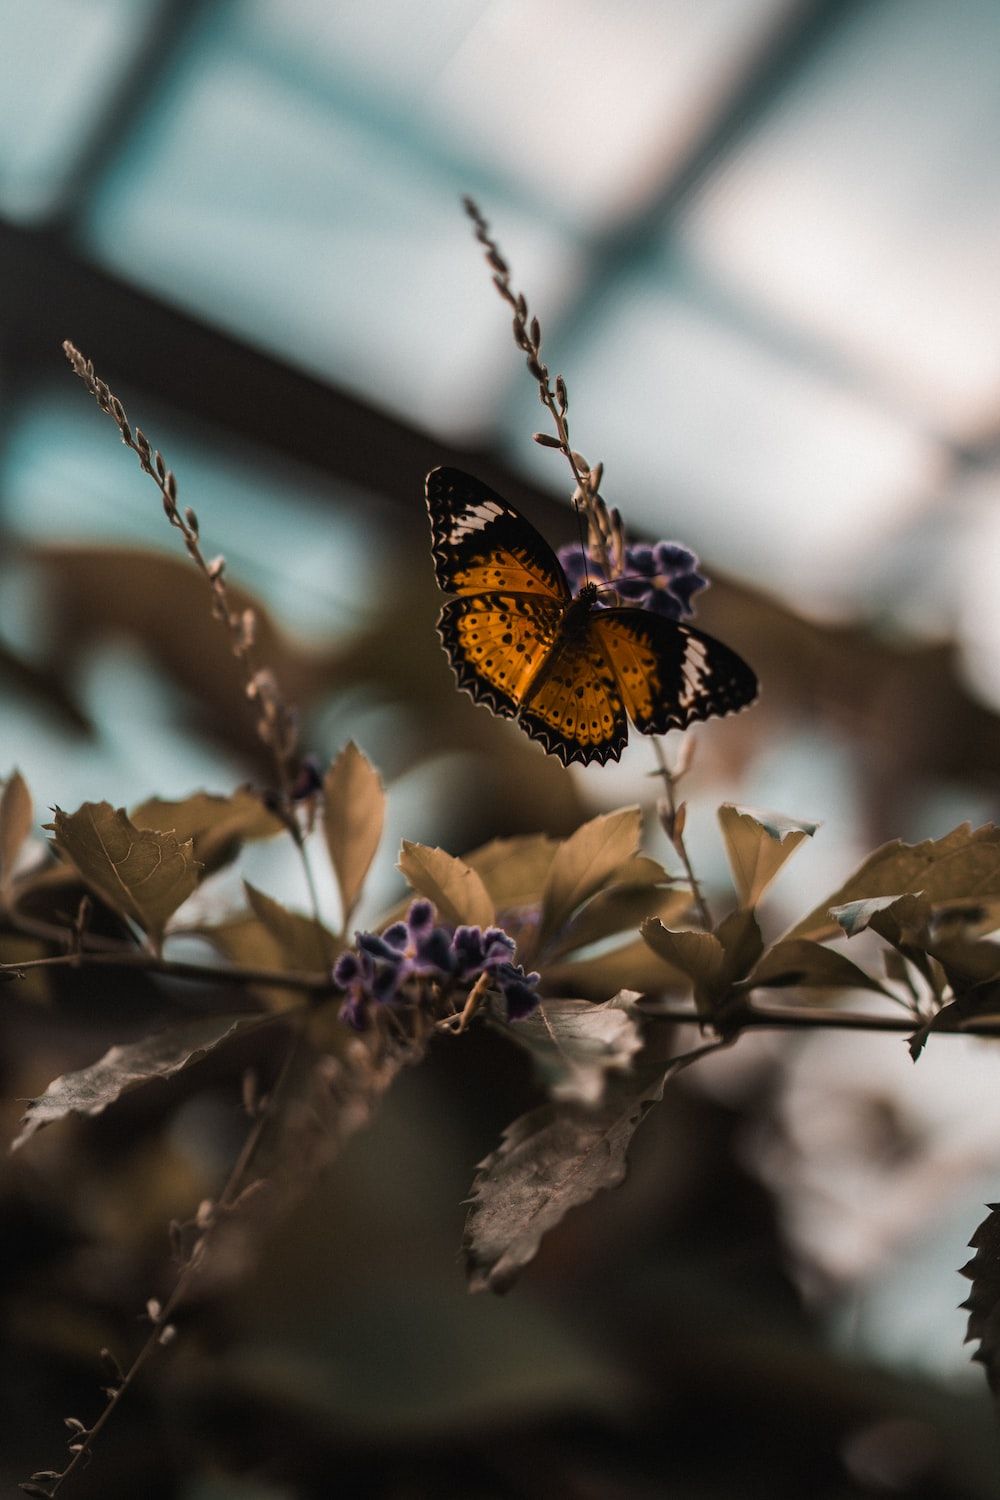  Blumen Und Schmetterlinge Hintergrundbild 1000x1500. Foto zum Thema Brauner und schwarzer schmetterling sitzt tagsüber auf violetten blumen